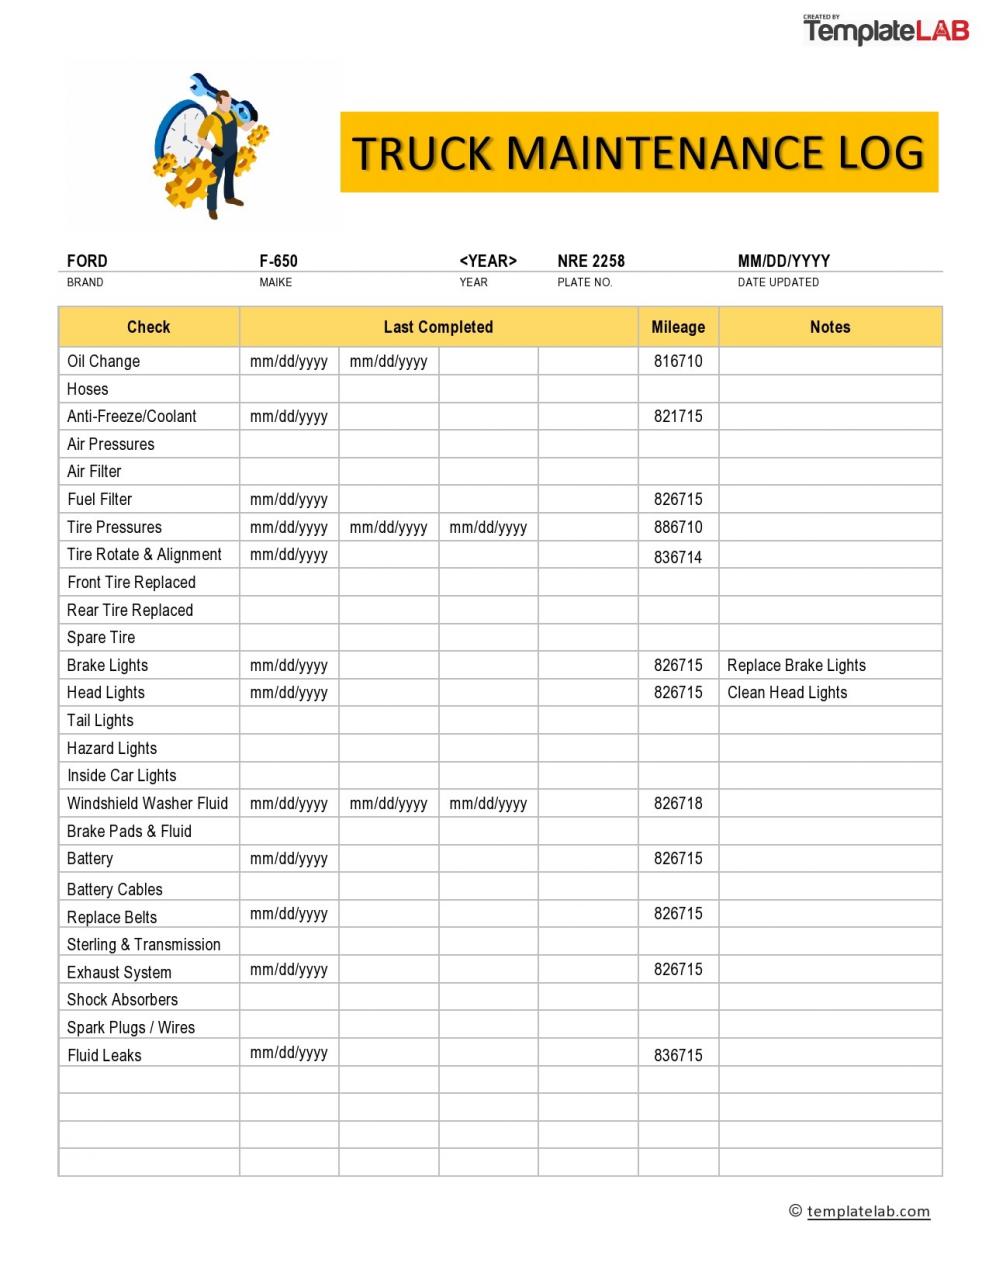 Registro de mantenimiento de camiones gratuito 02 - TemplateLab.com